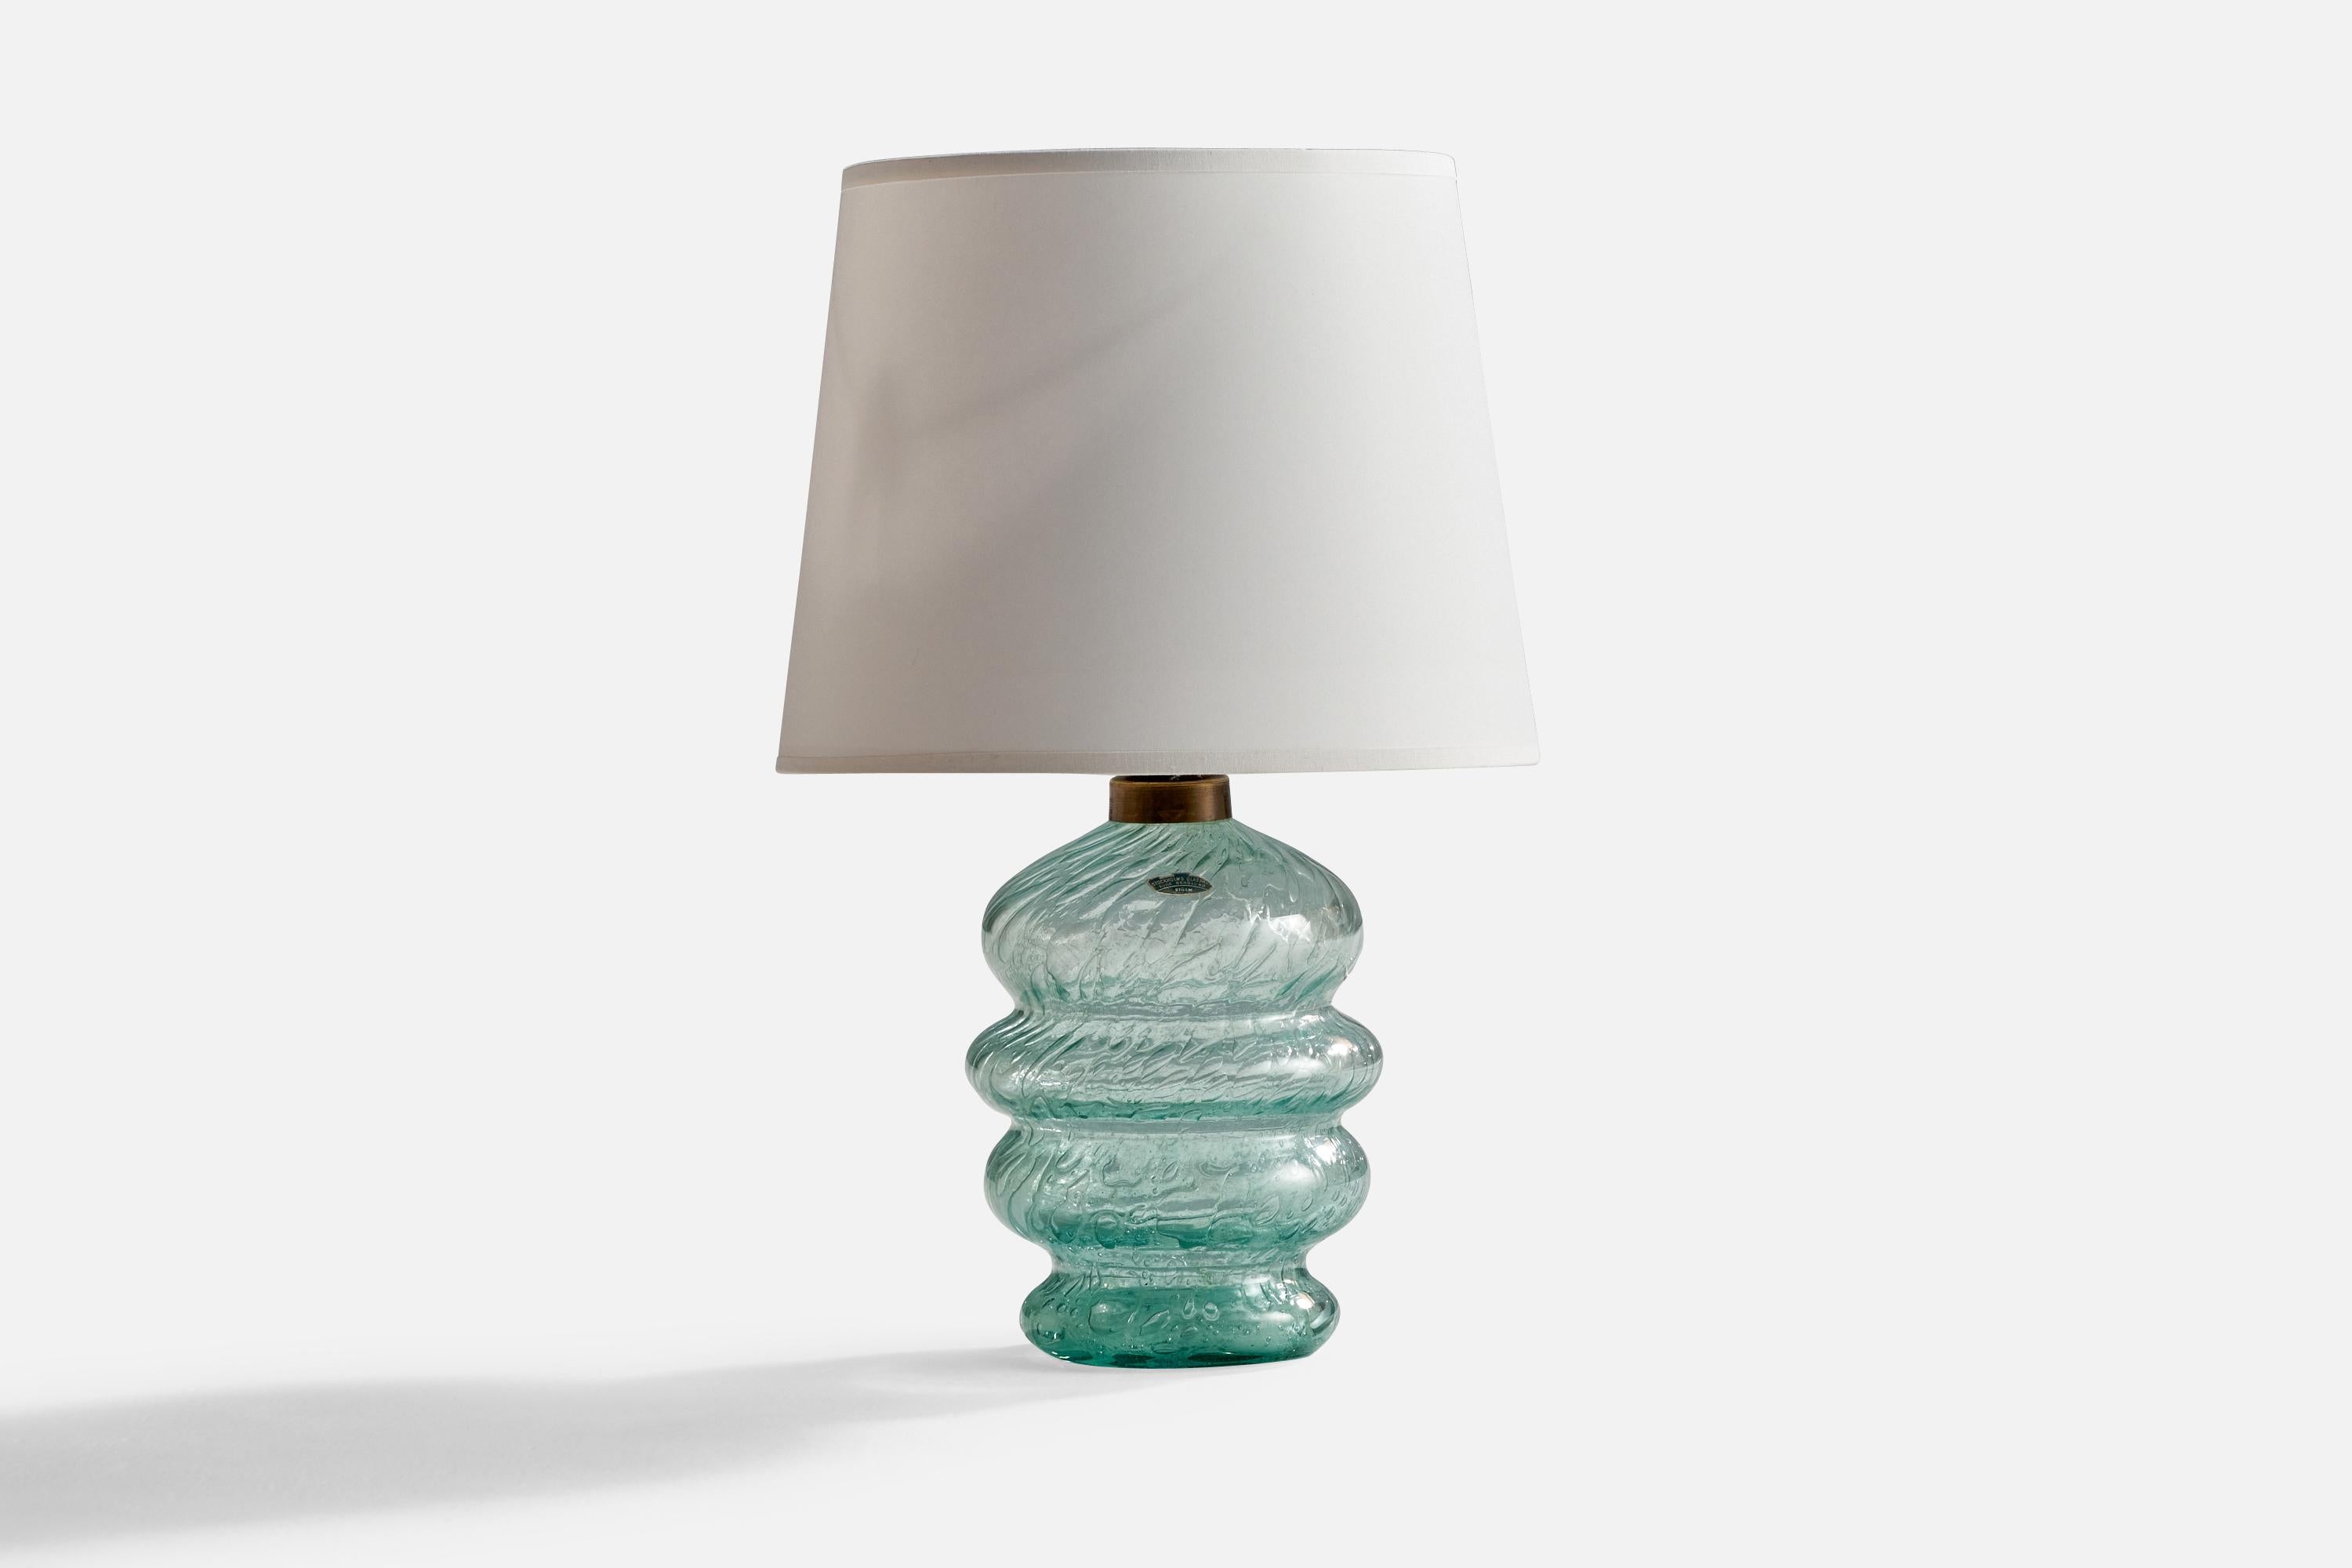 Lampe de table en verre et en laiton, conçue par Ture Berglund et produite par Skansen, Glass, Suède, c. 1940s.

Dimensions de la lampe (pouces) : 11